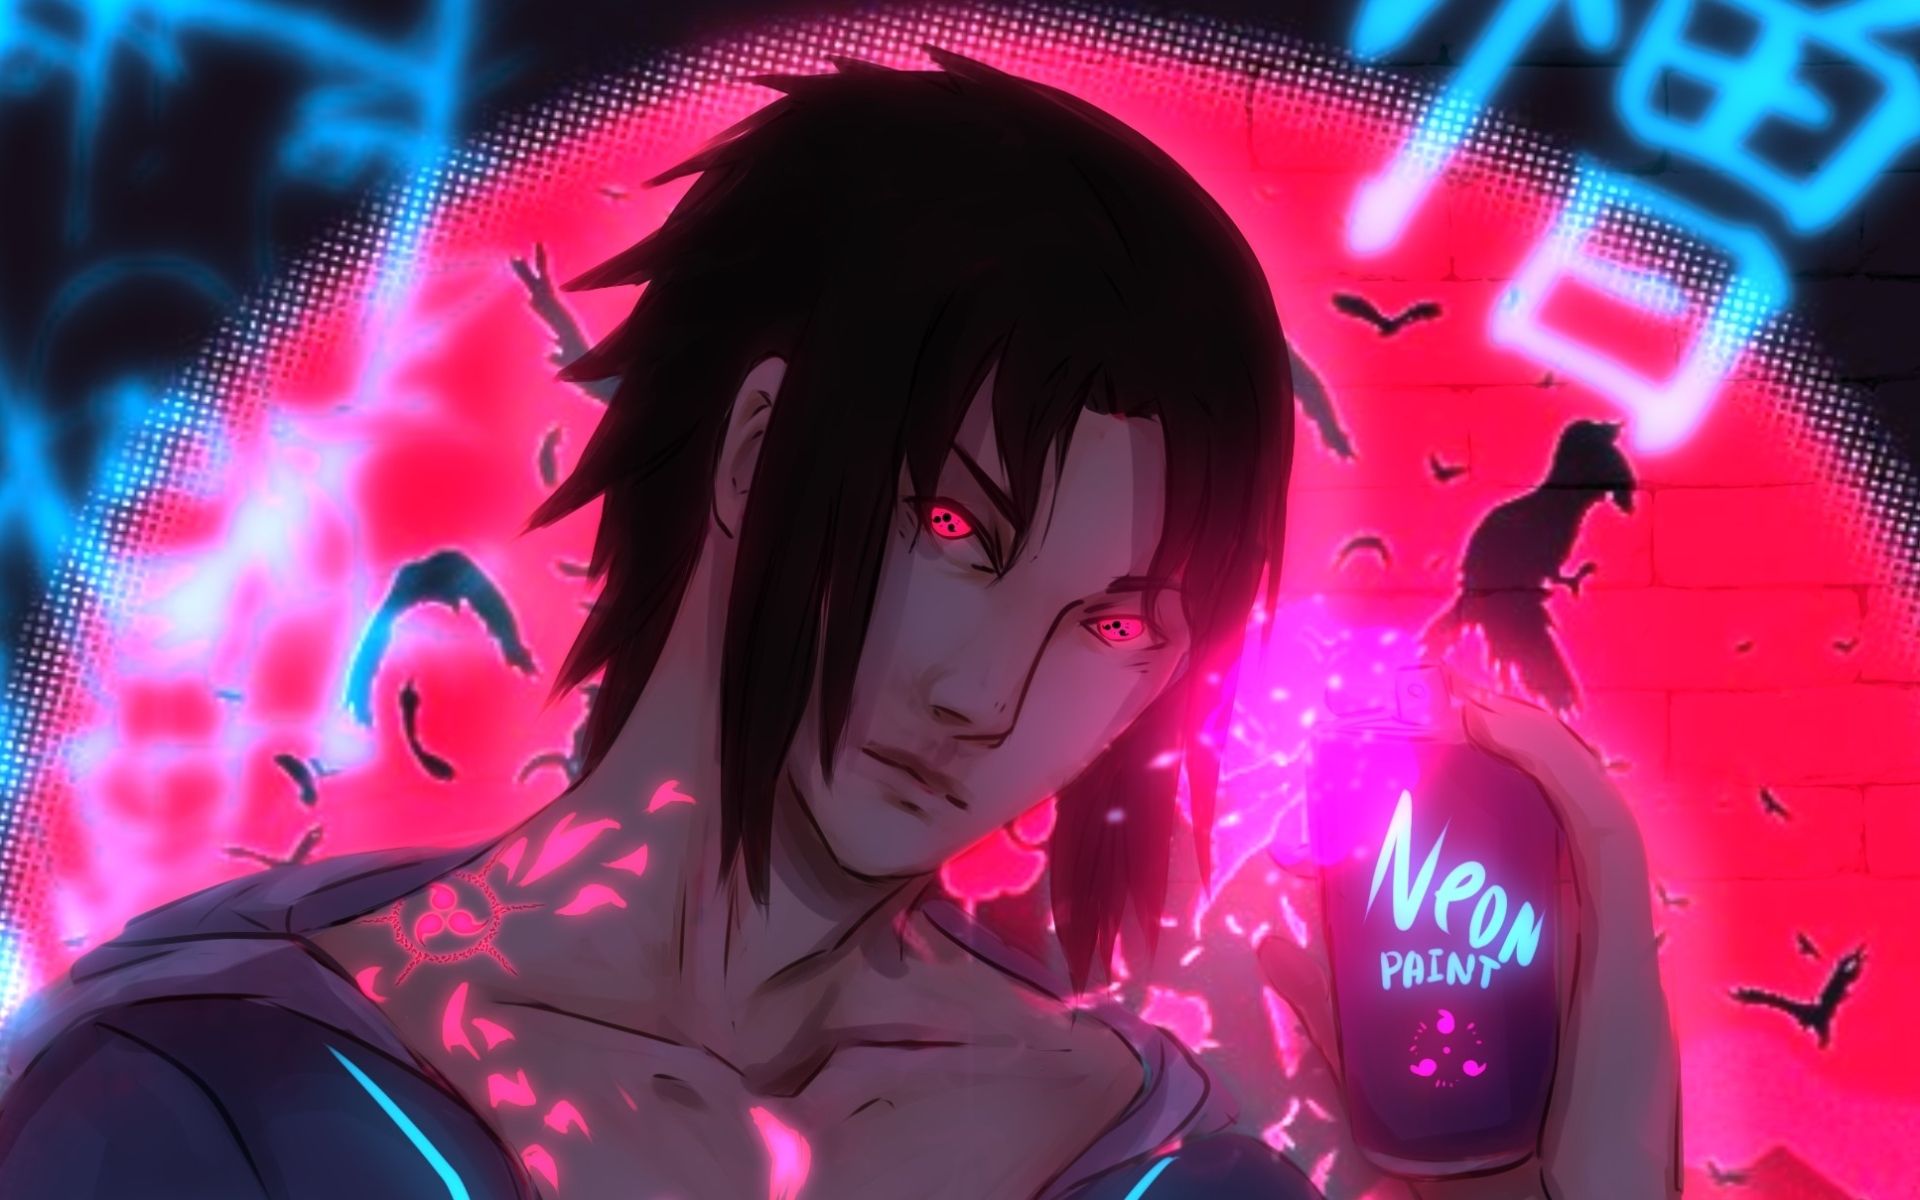 Download wallpaper Sasuke Uchiha, neon art, Naruto characters